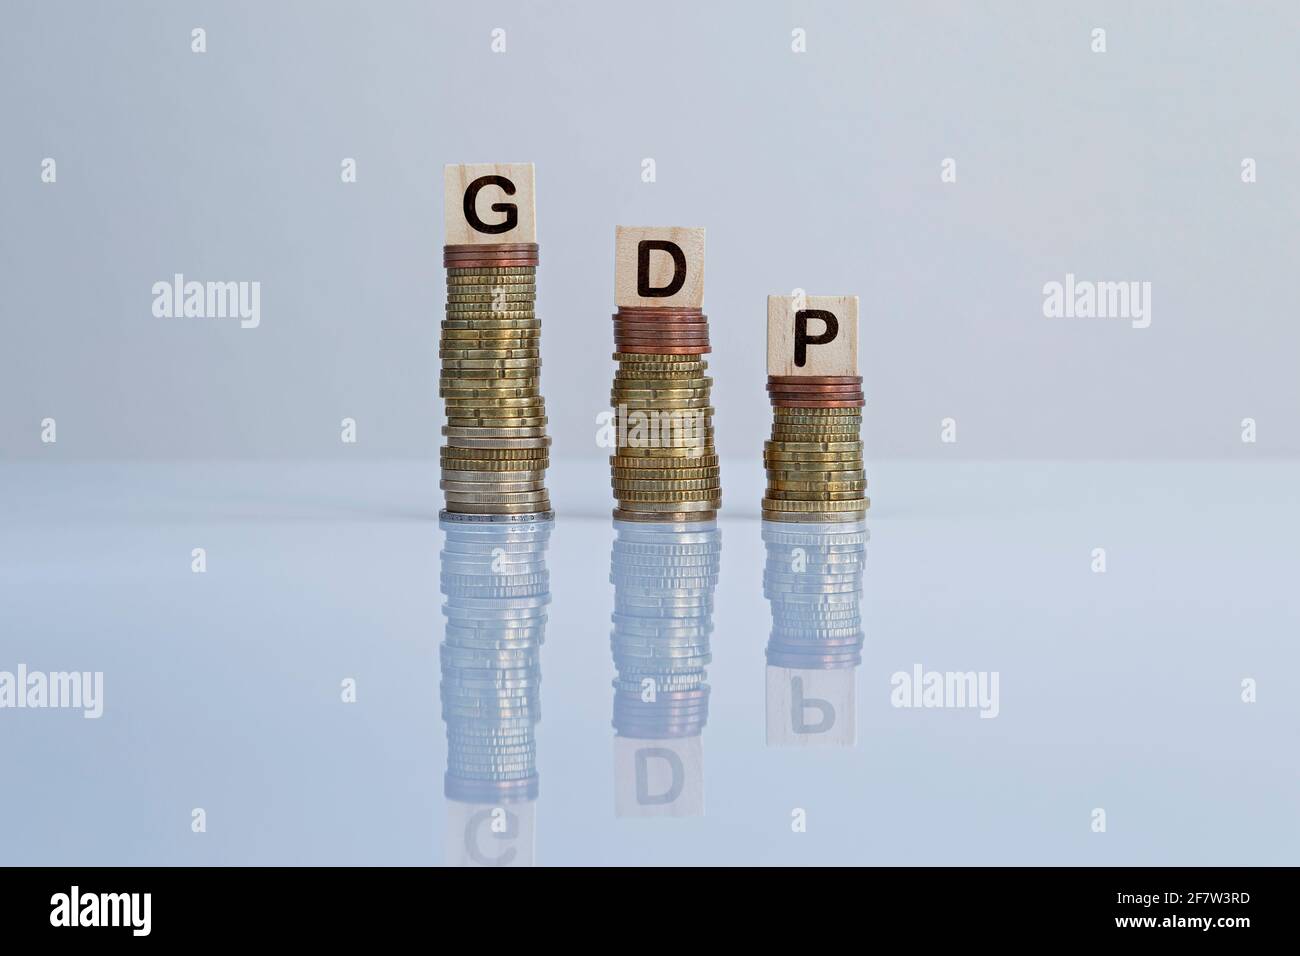 Wort „GDP“ auf Holzblöcken auf absteigenden Münzstapeln. Konzeptfoto des BIP (Bruttoinlandsprodukt) Konjunkturindikator, Wirtschaft und Rezession. Stockfoto